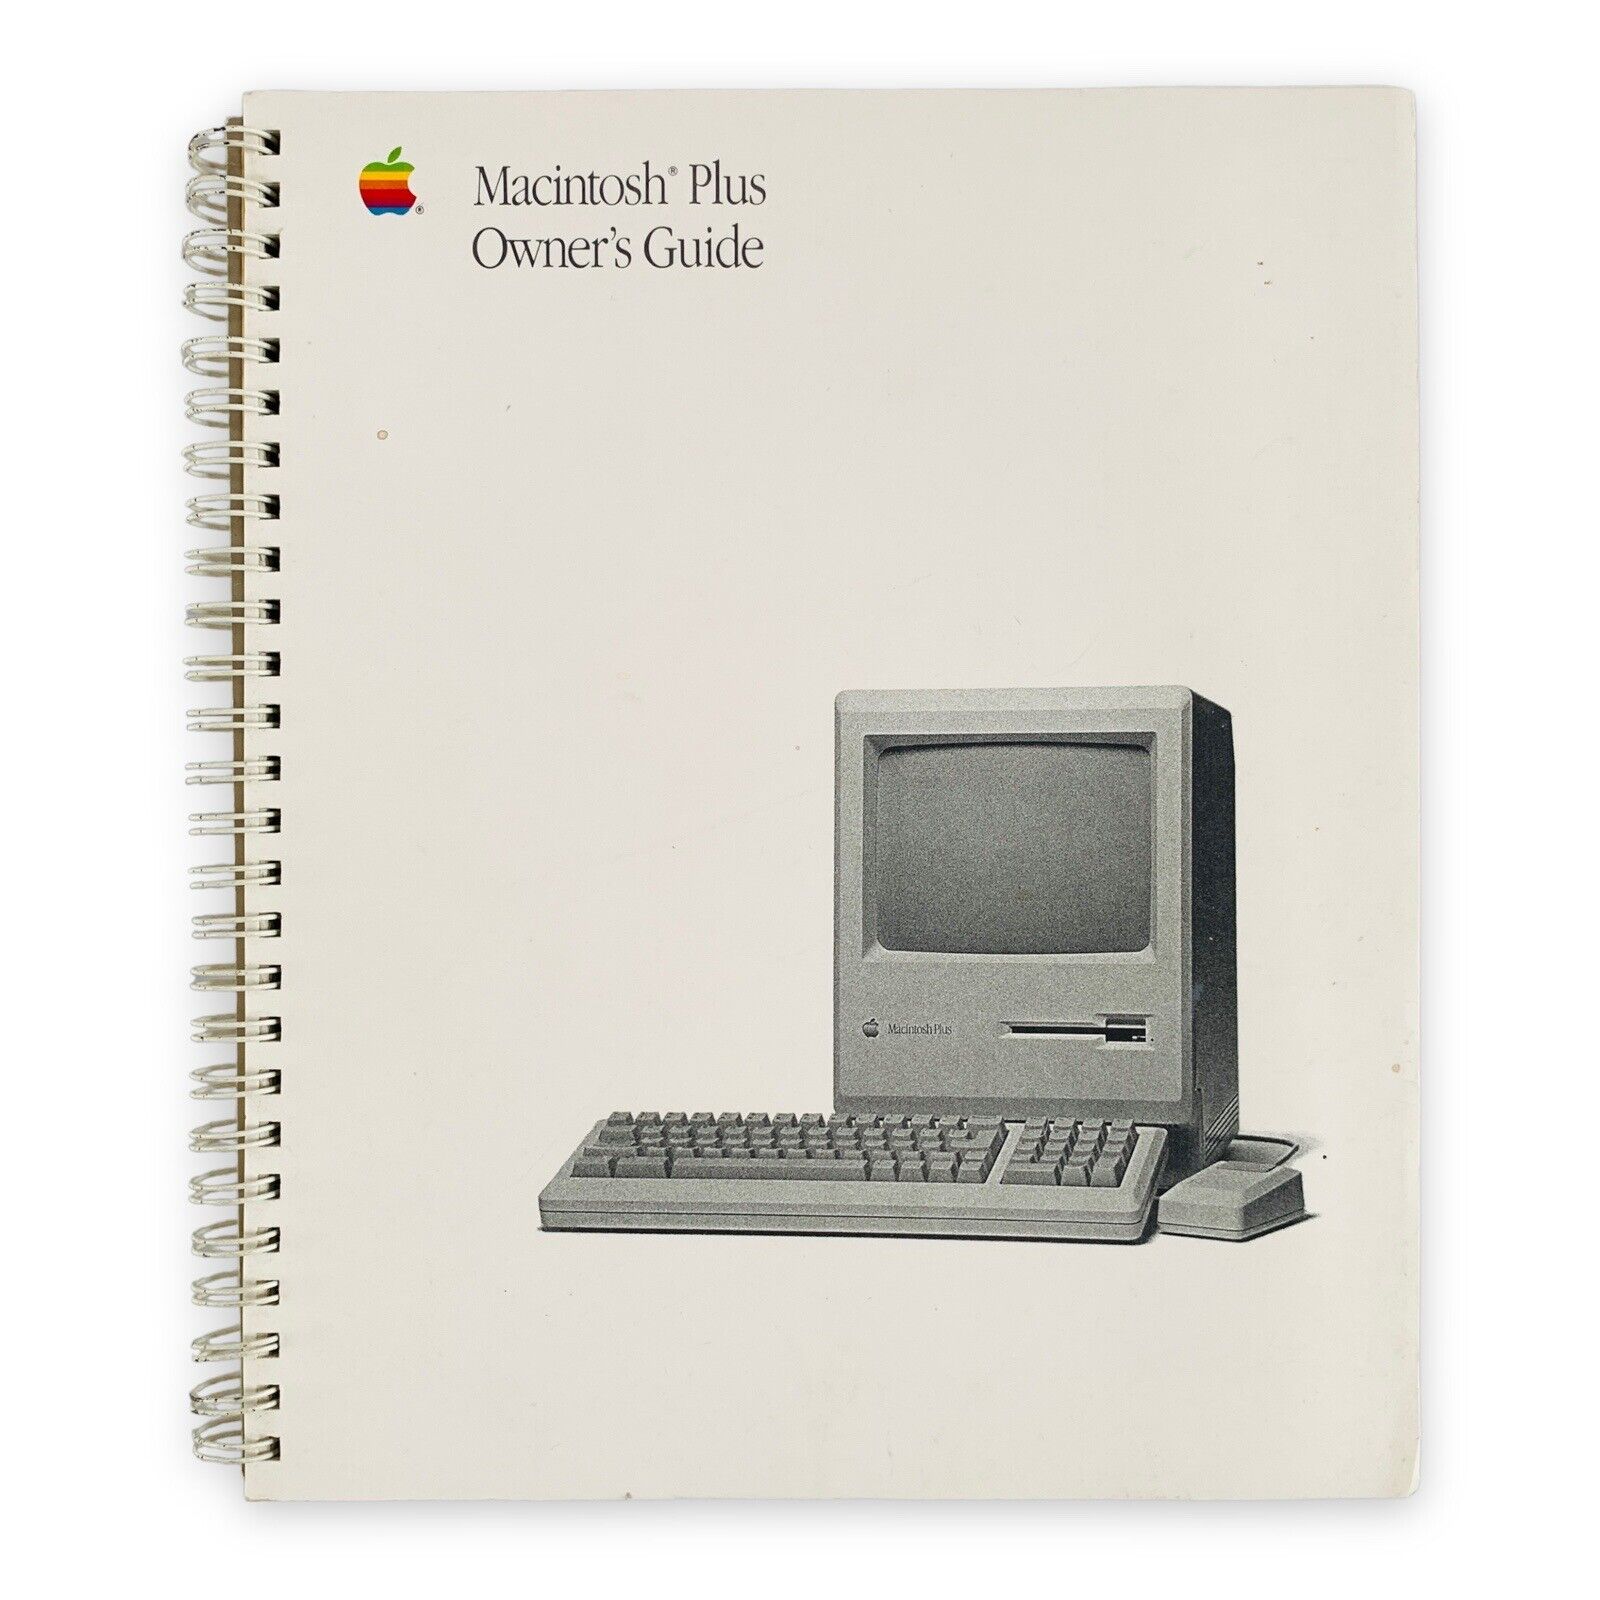 Macintosh Plus Manual Owner’s Guide VTG 1988